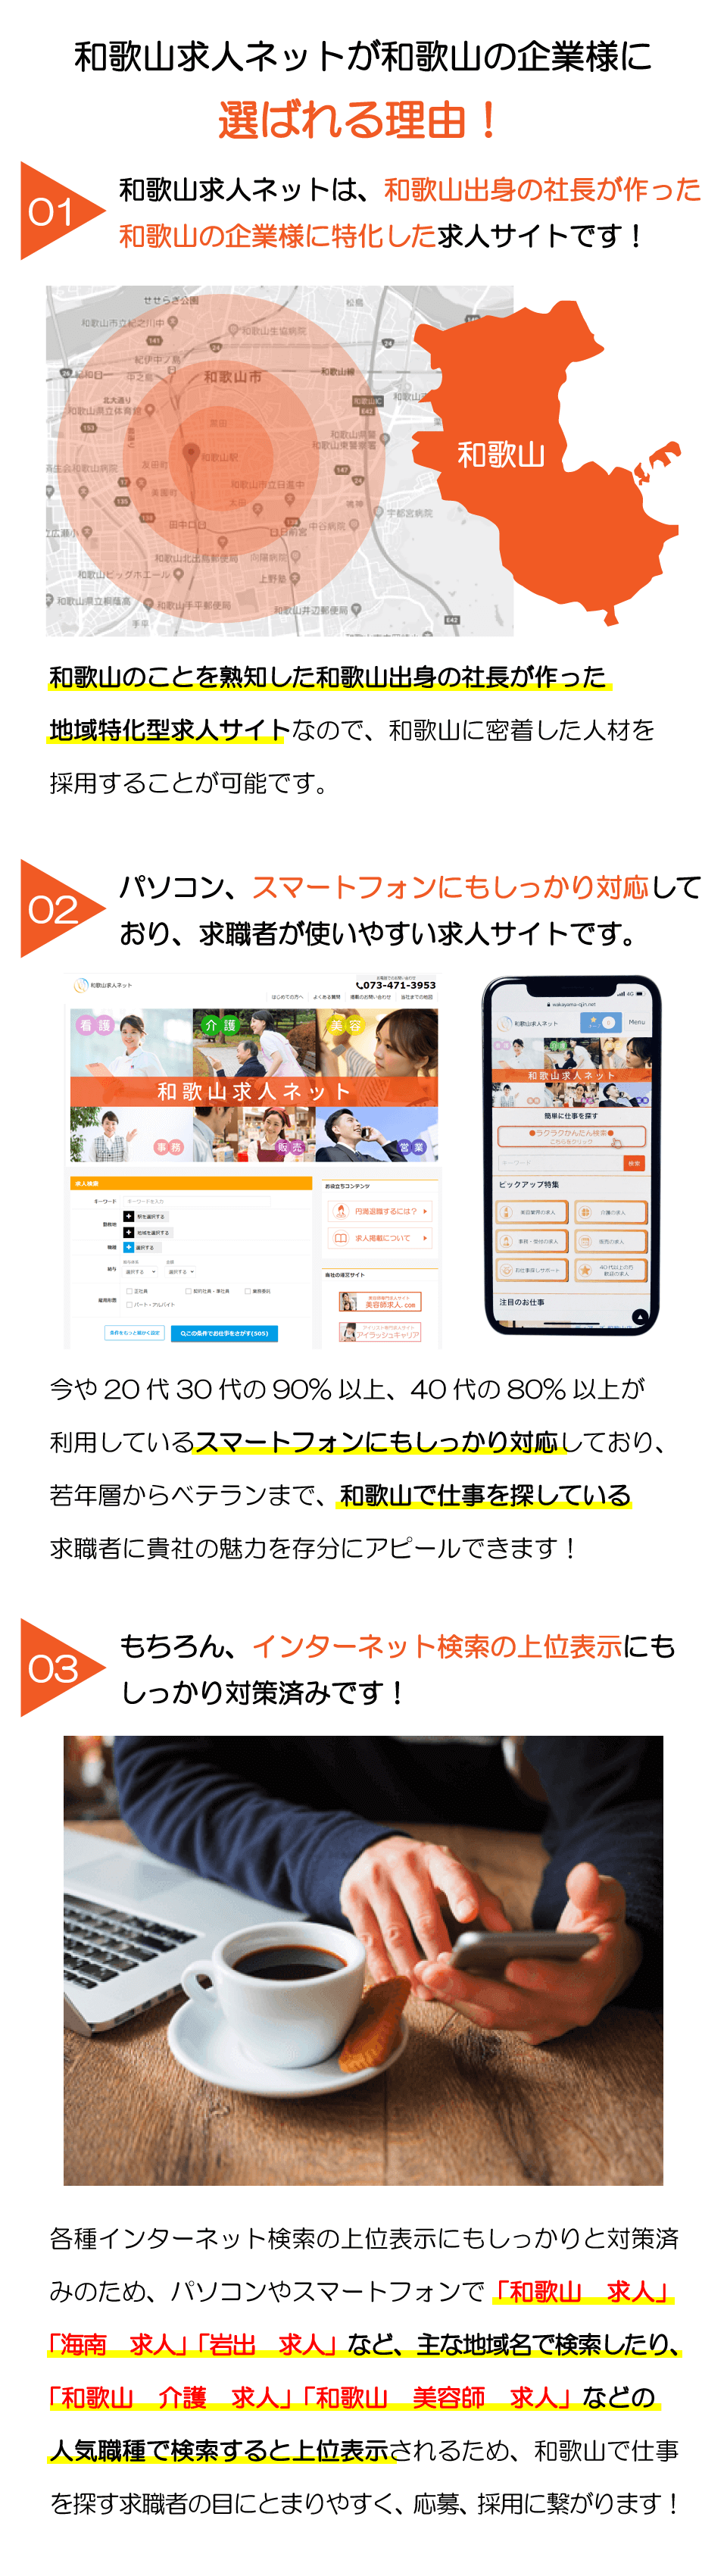 和歌山求人ネットなら採用、募集のお悩みが解決できます。和歌山に特化した地域特化型求人サイトで、上位表示対策済みです。